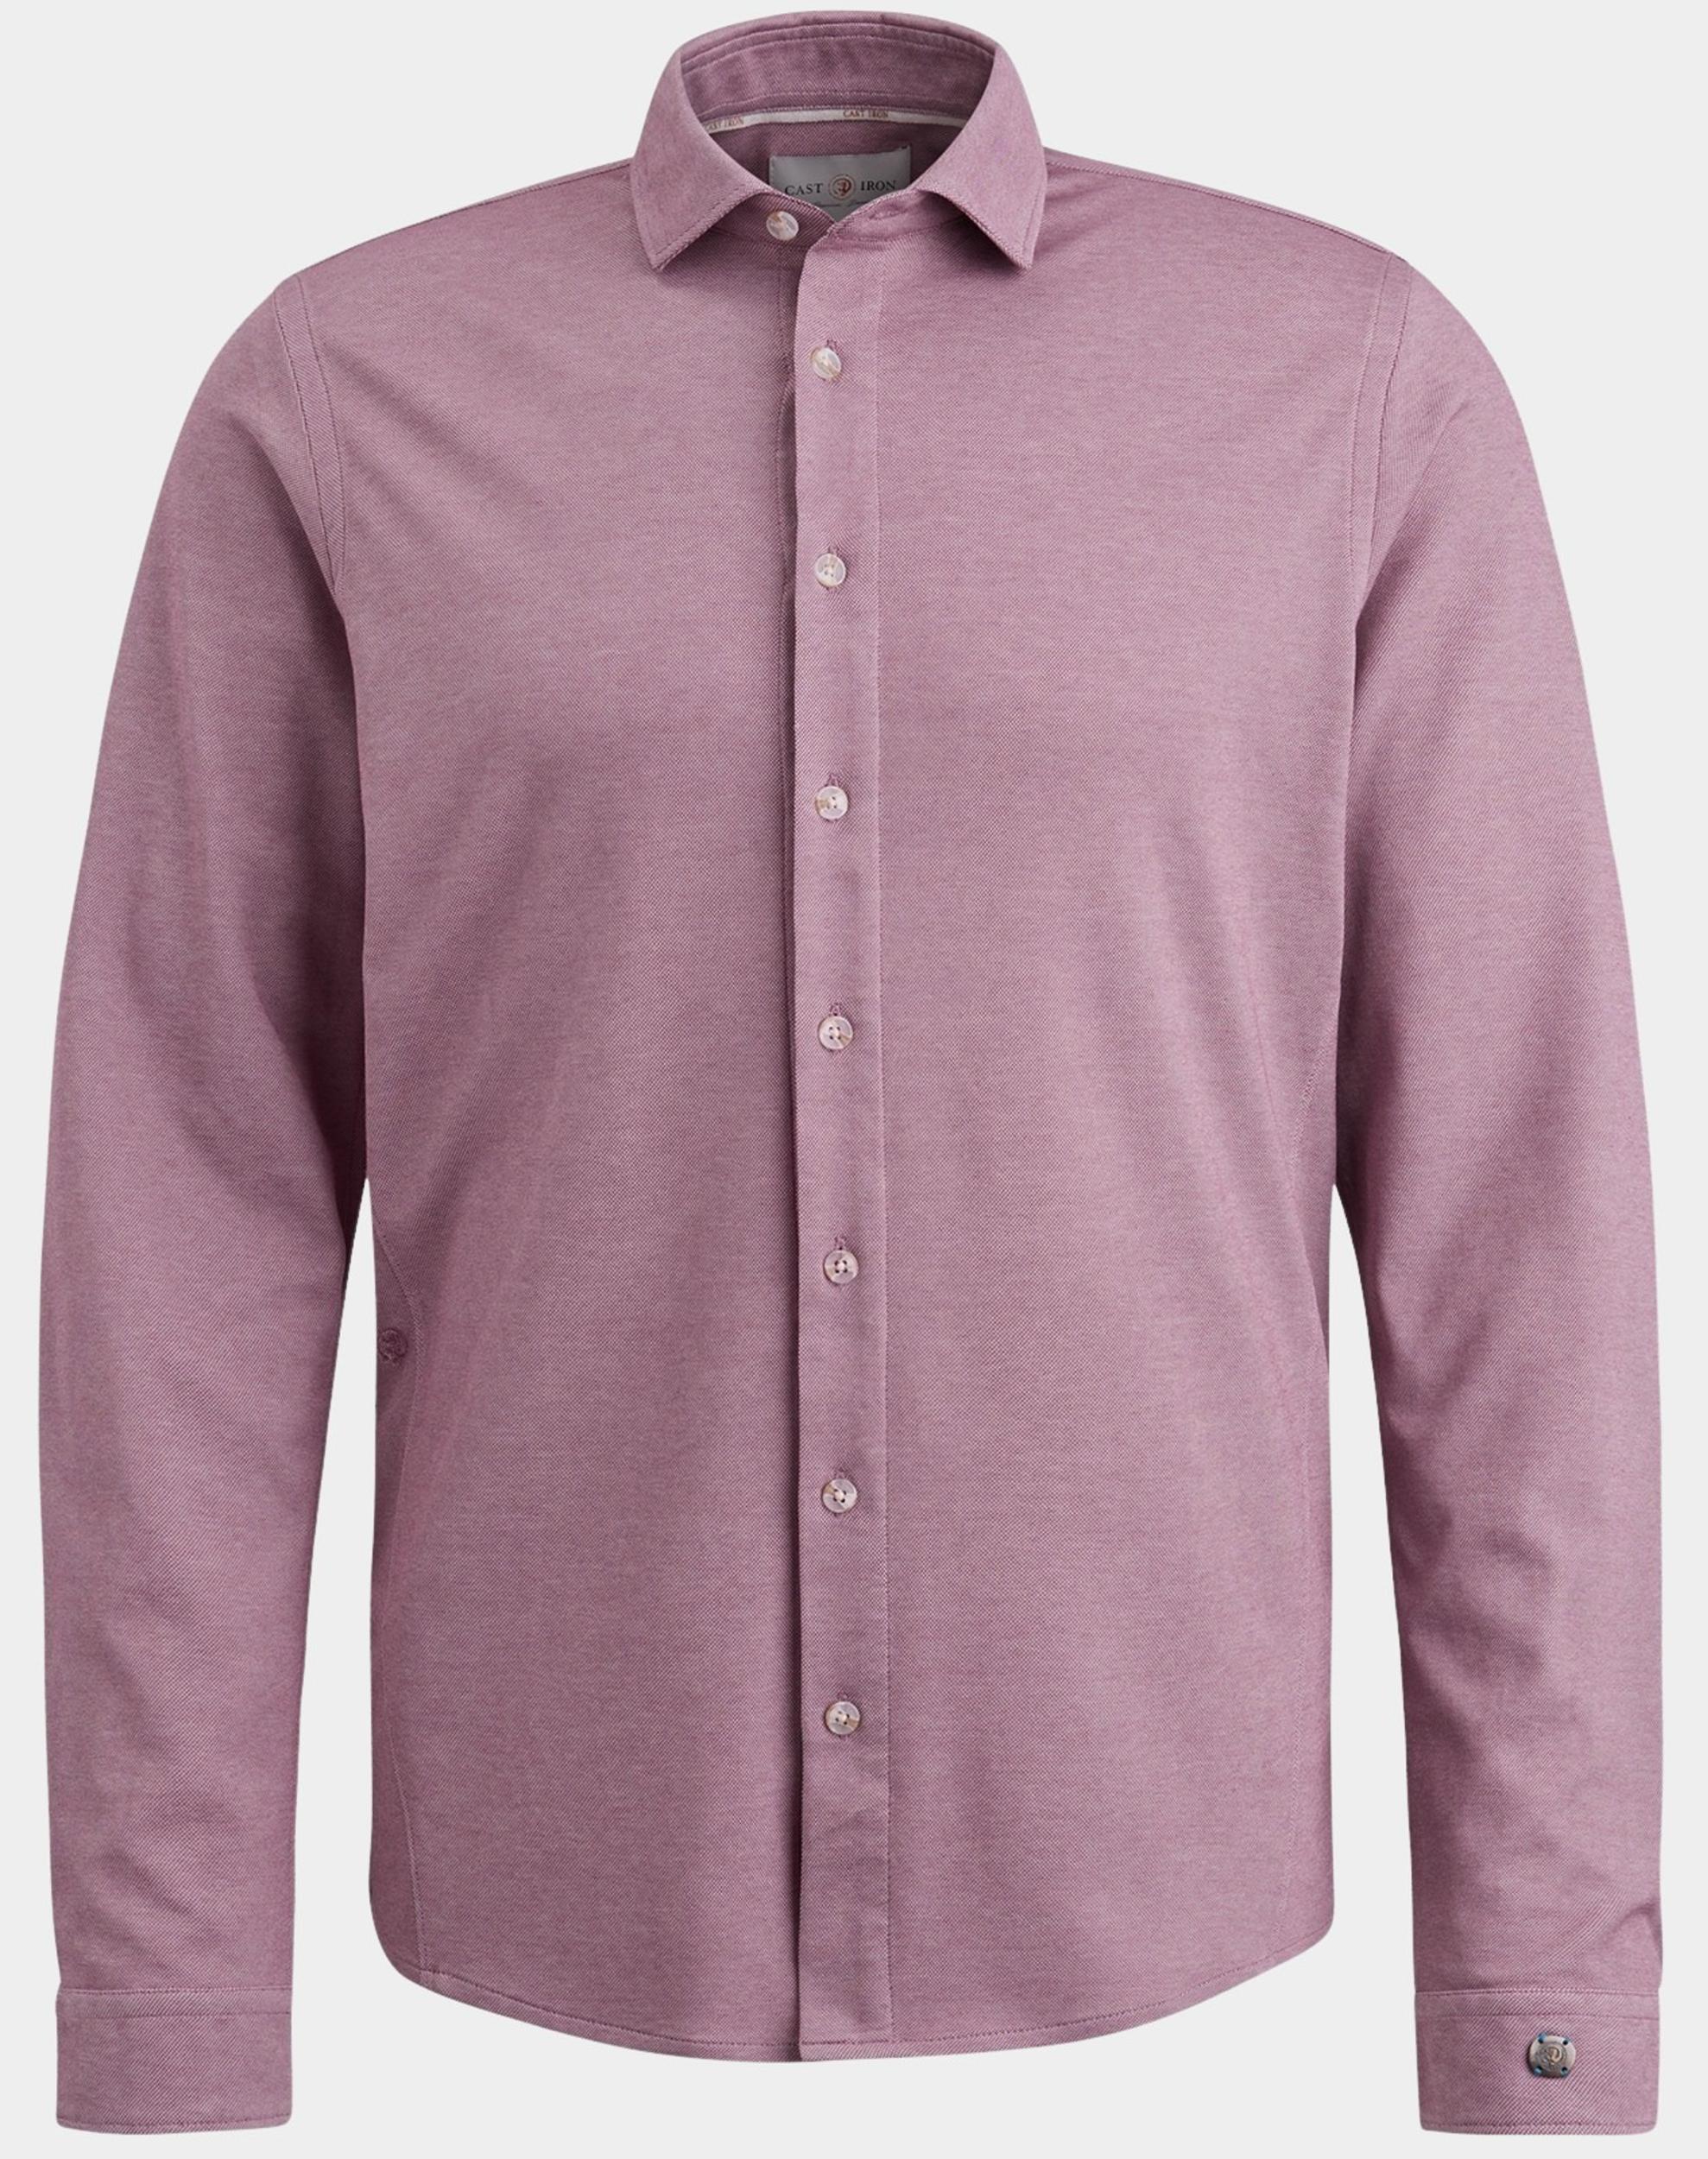 Cast Iron Casual hemd lange mouw Roze Long Sleeve Shirt CF Tec 2 to CSI2403231/4115